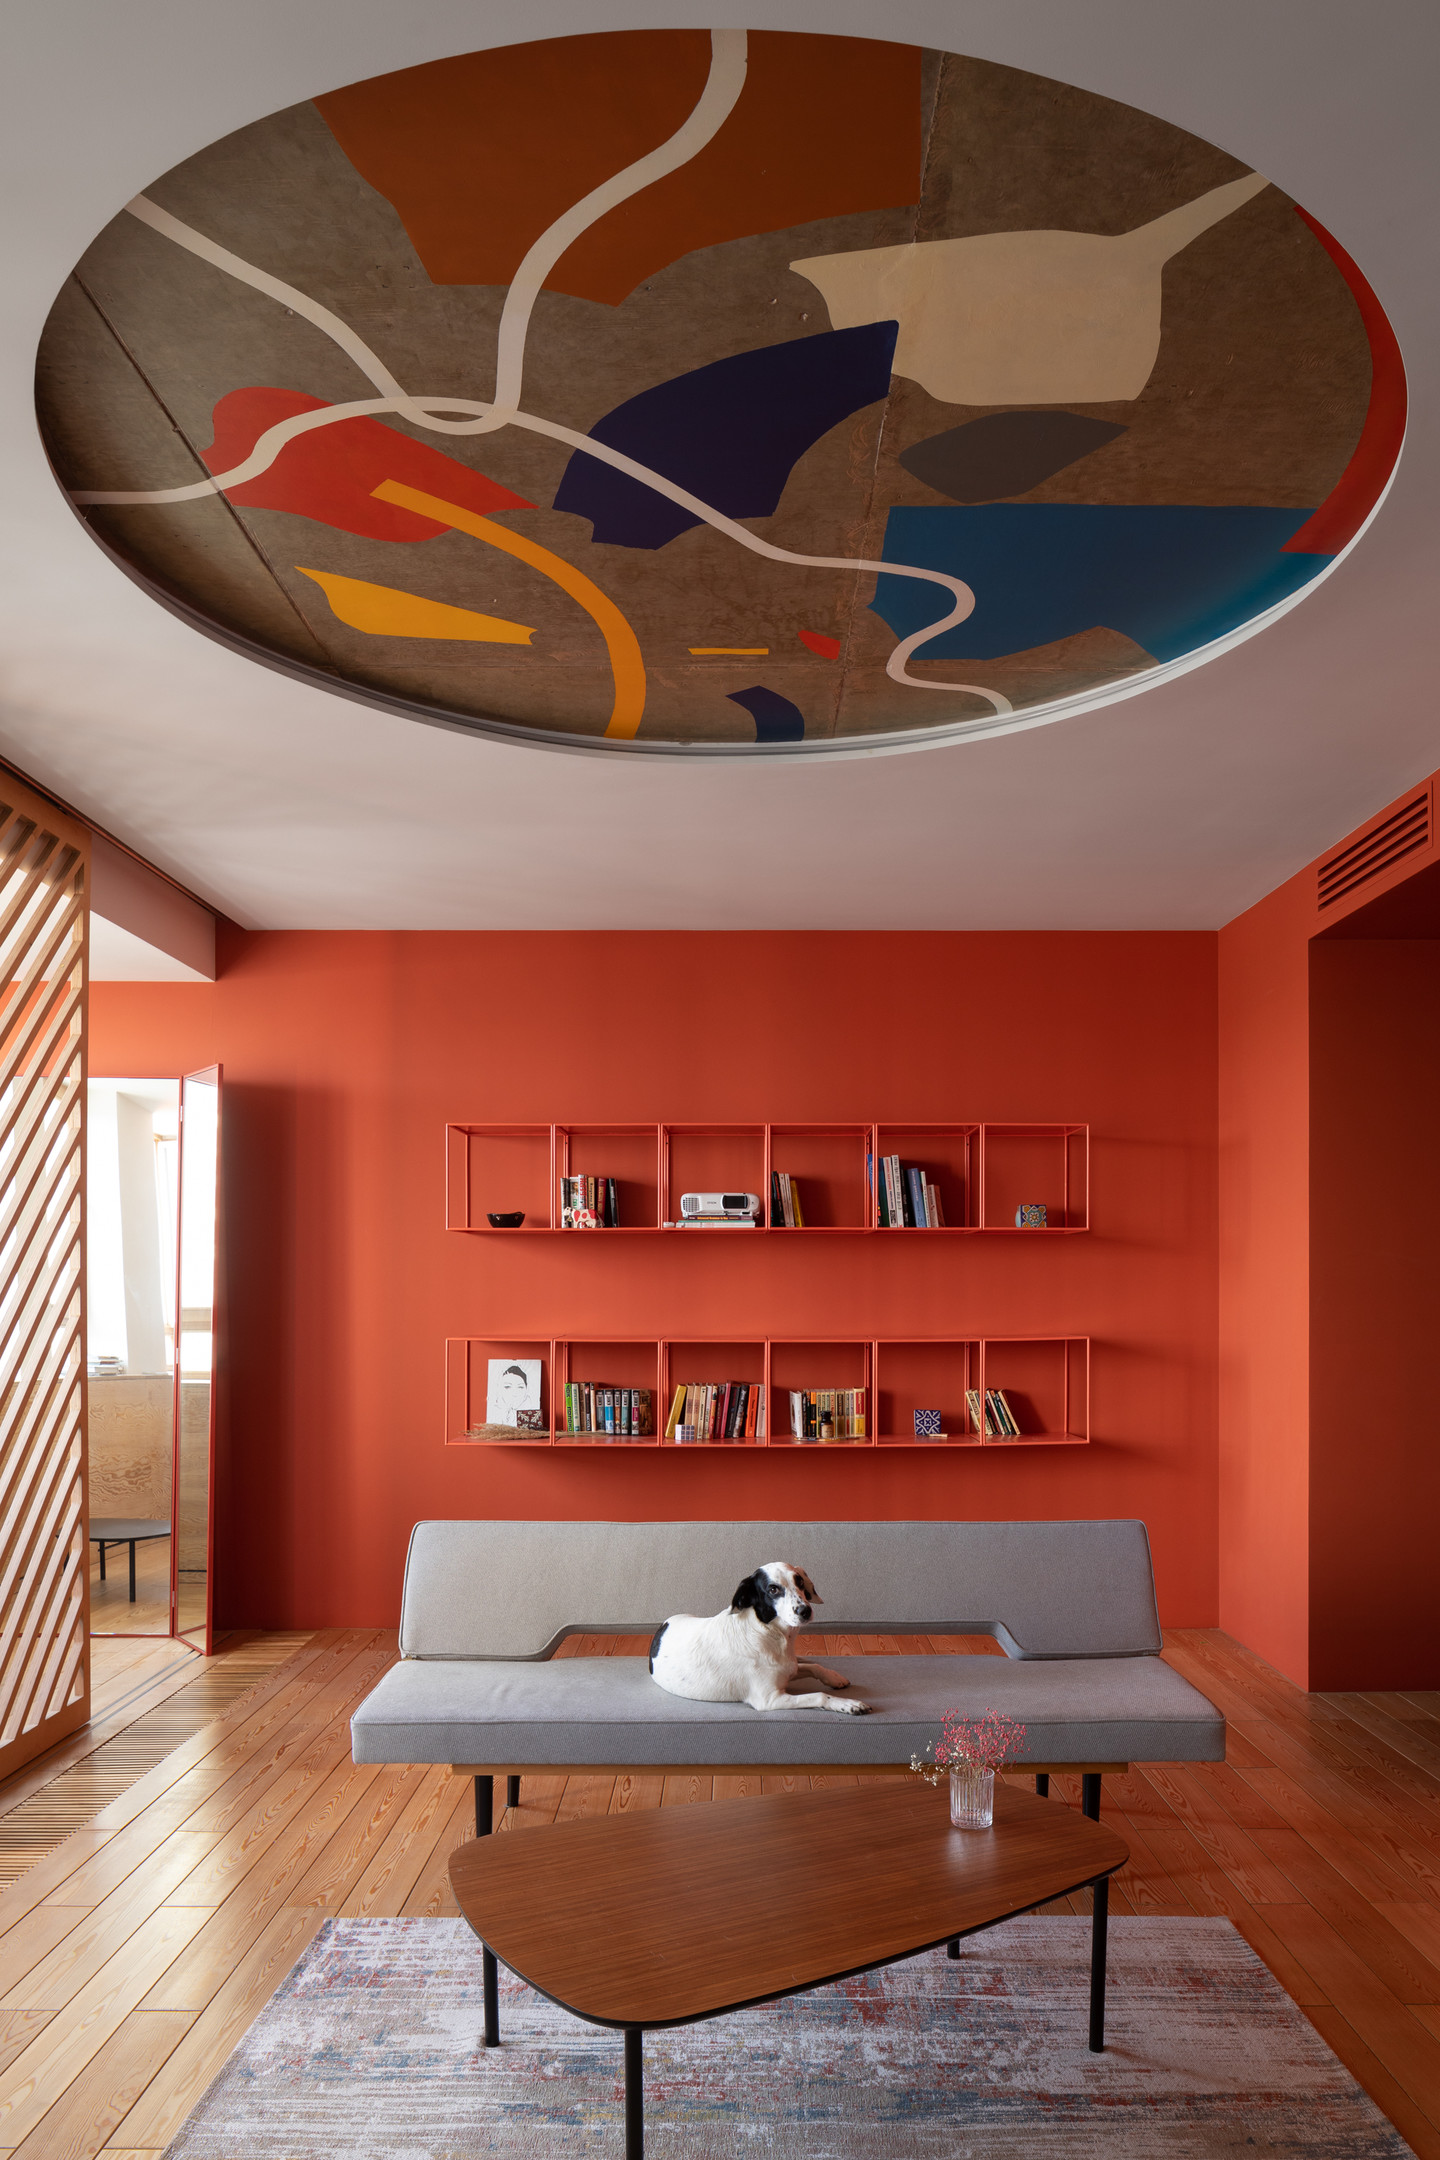 Bức tranh trừu tượng với các dạng hình học tươi sáng cũng có thể trở thành điểm nhấn phong cách cho căn hộ hay ngôi nhà hiện đại. 